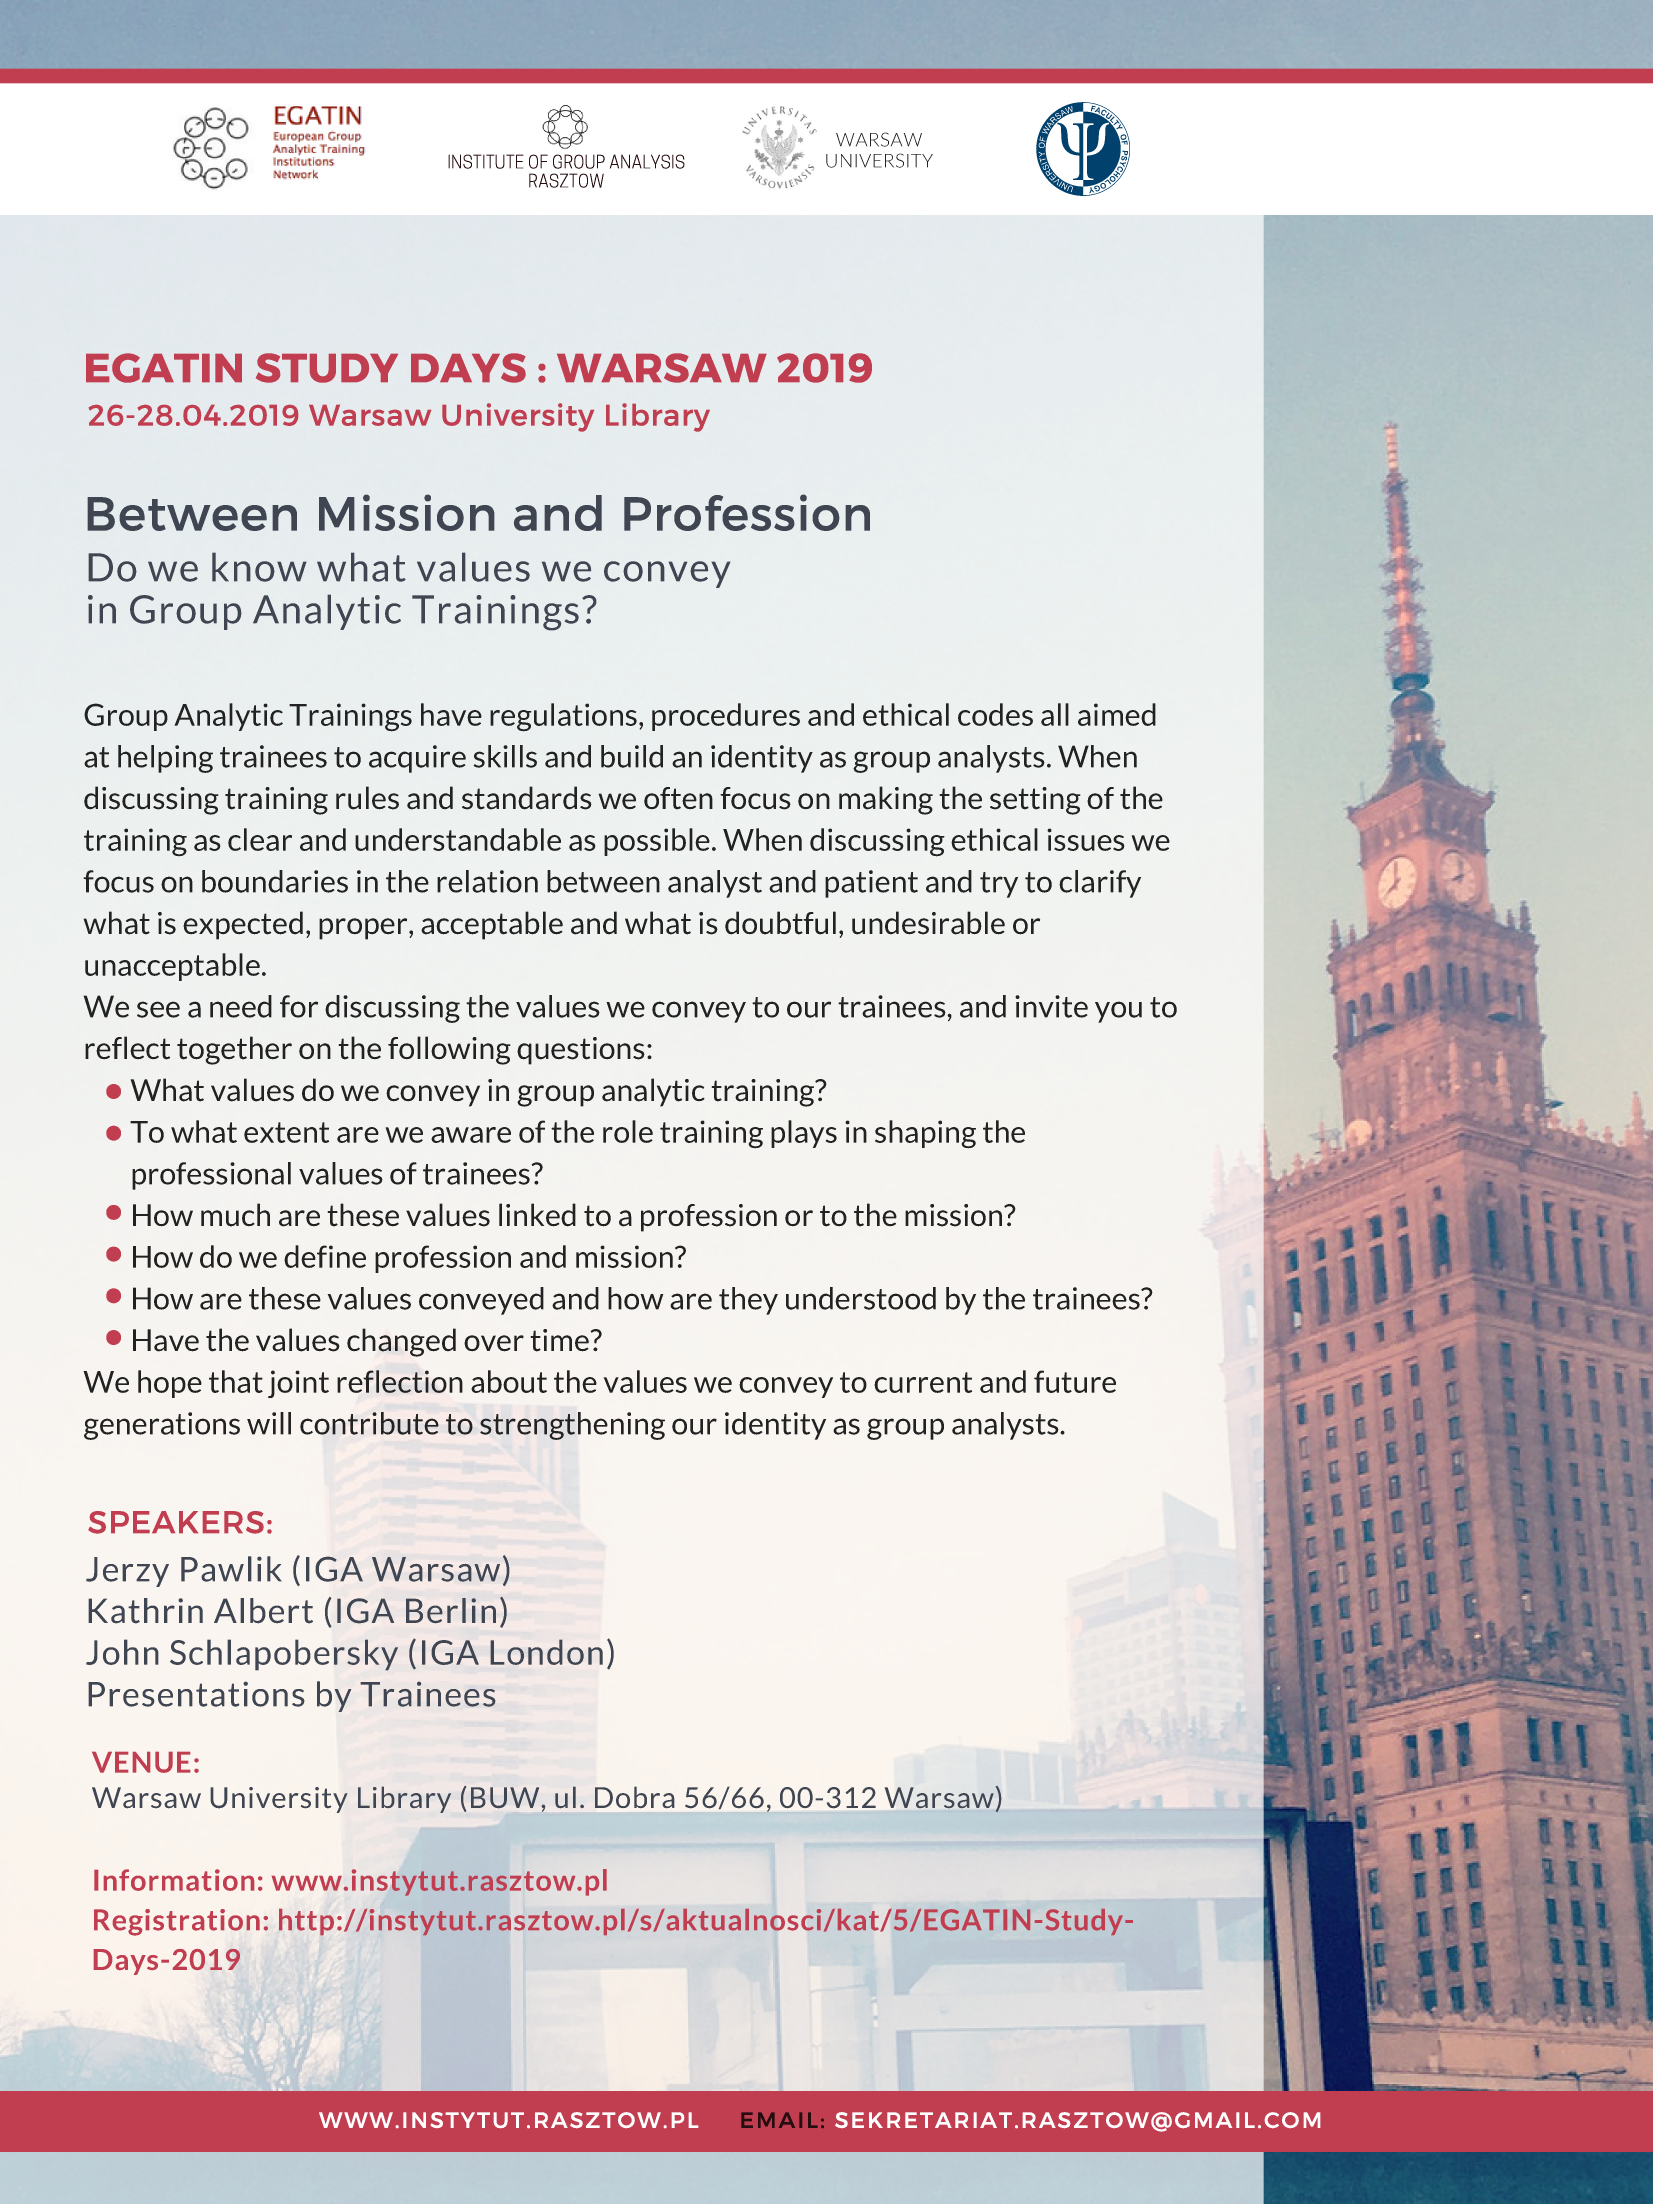 Study Days Warsaw 2019